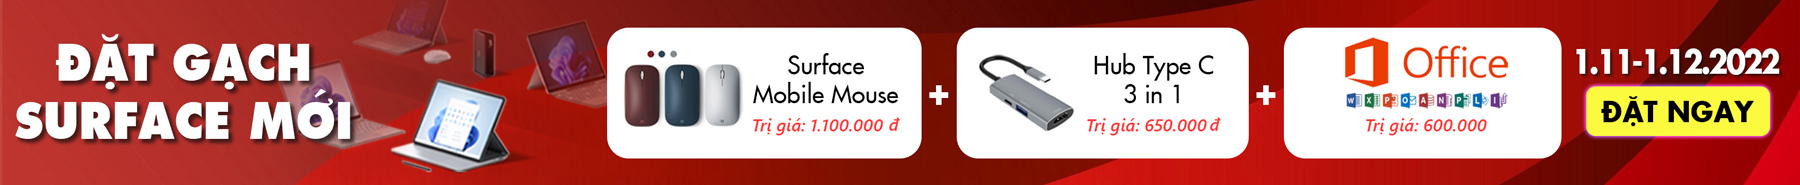 Surface Store - Hệ thống bán lẻ surface, phụ kiện chính hãng